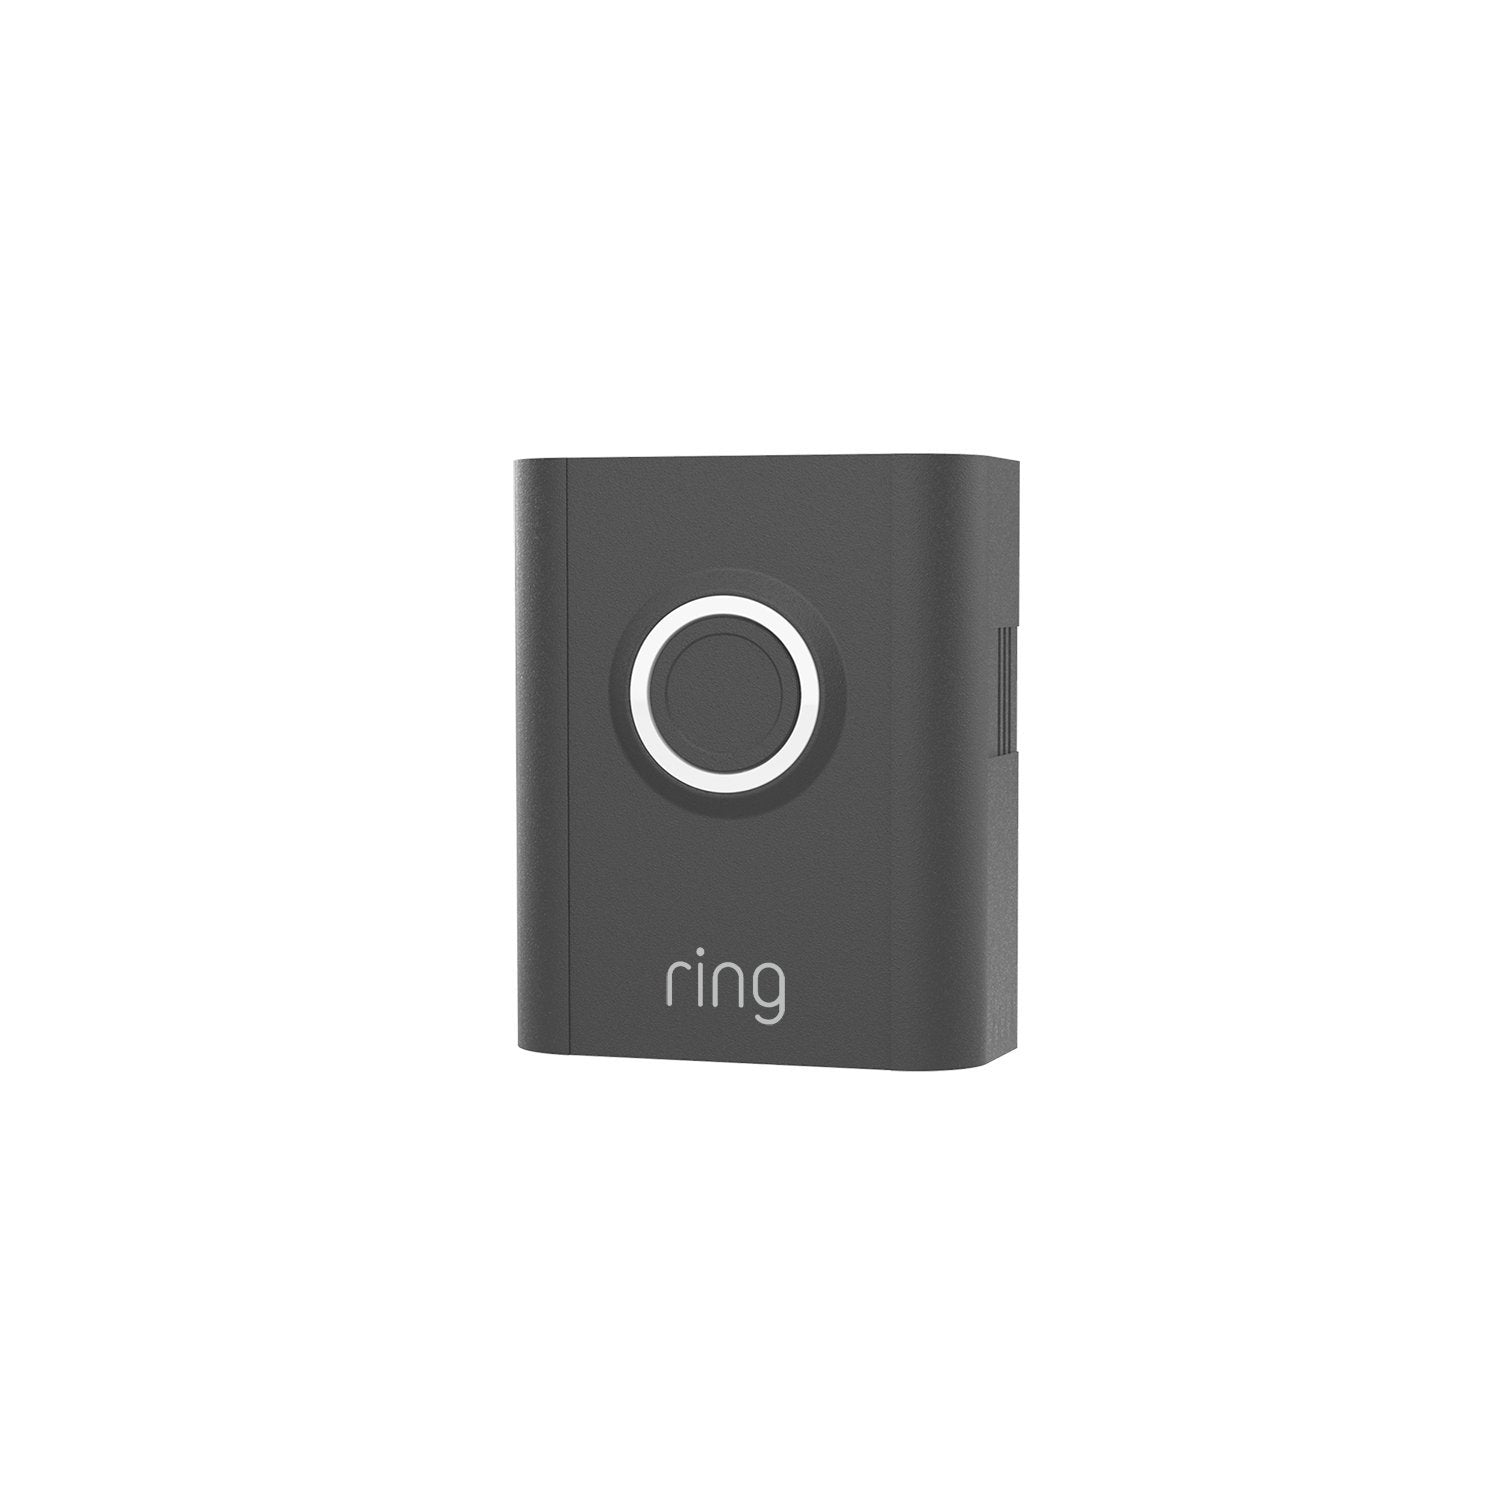 Interchangeable Faceplate (for Video Doorbell 3, Video Doorbell 3 Plus, Video Doorbell 4, Battery Video Doorbell Plus, Battery Video Doorbell Pro) - Galaxy Black